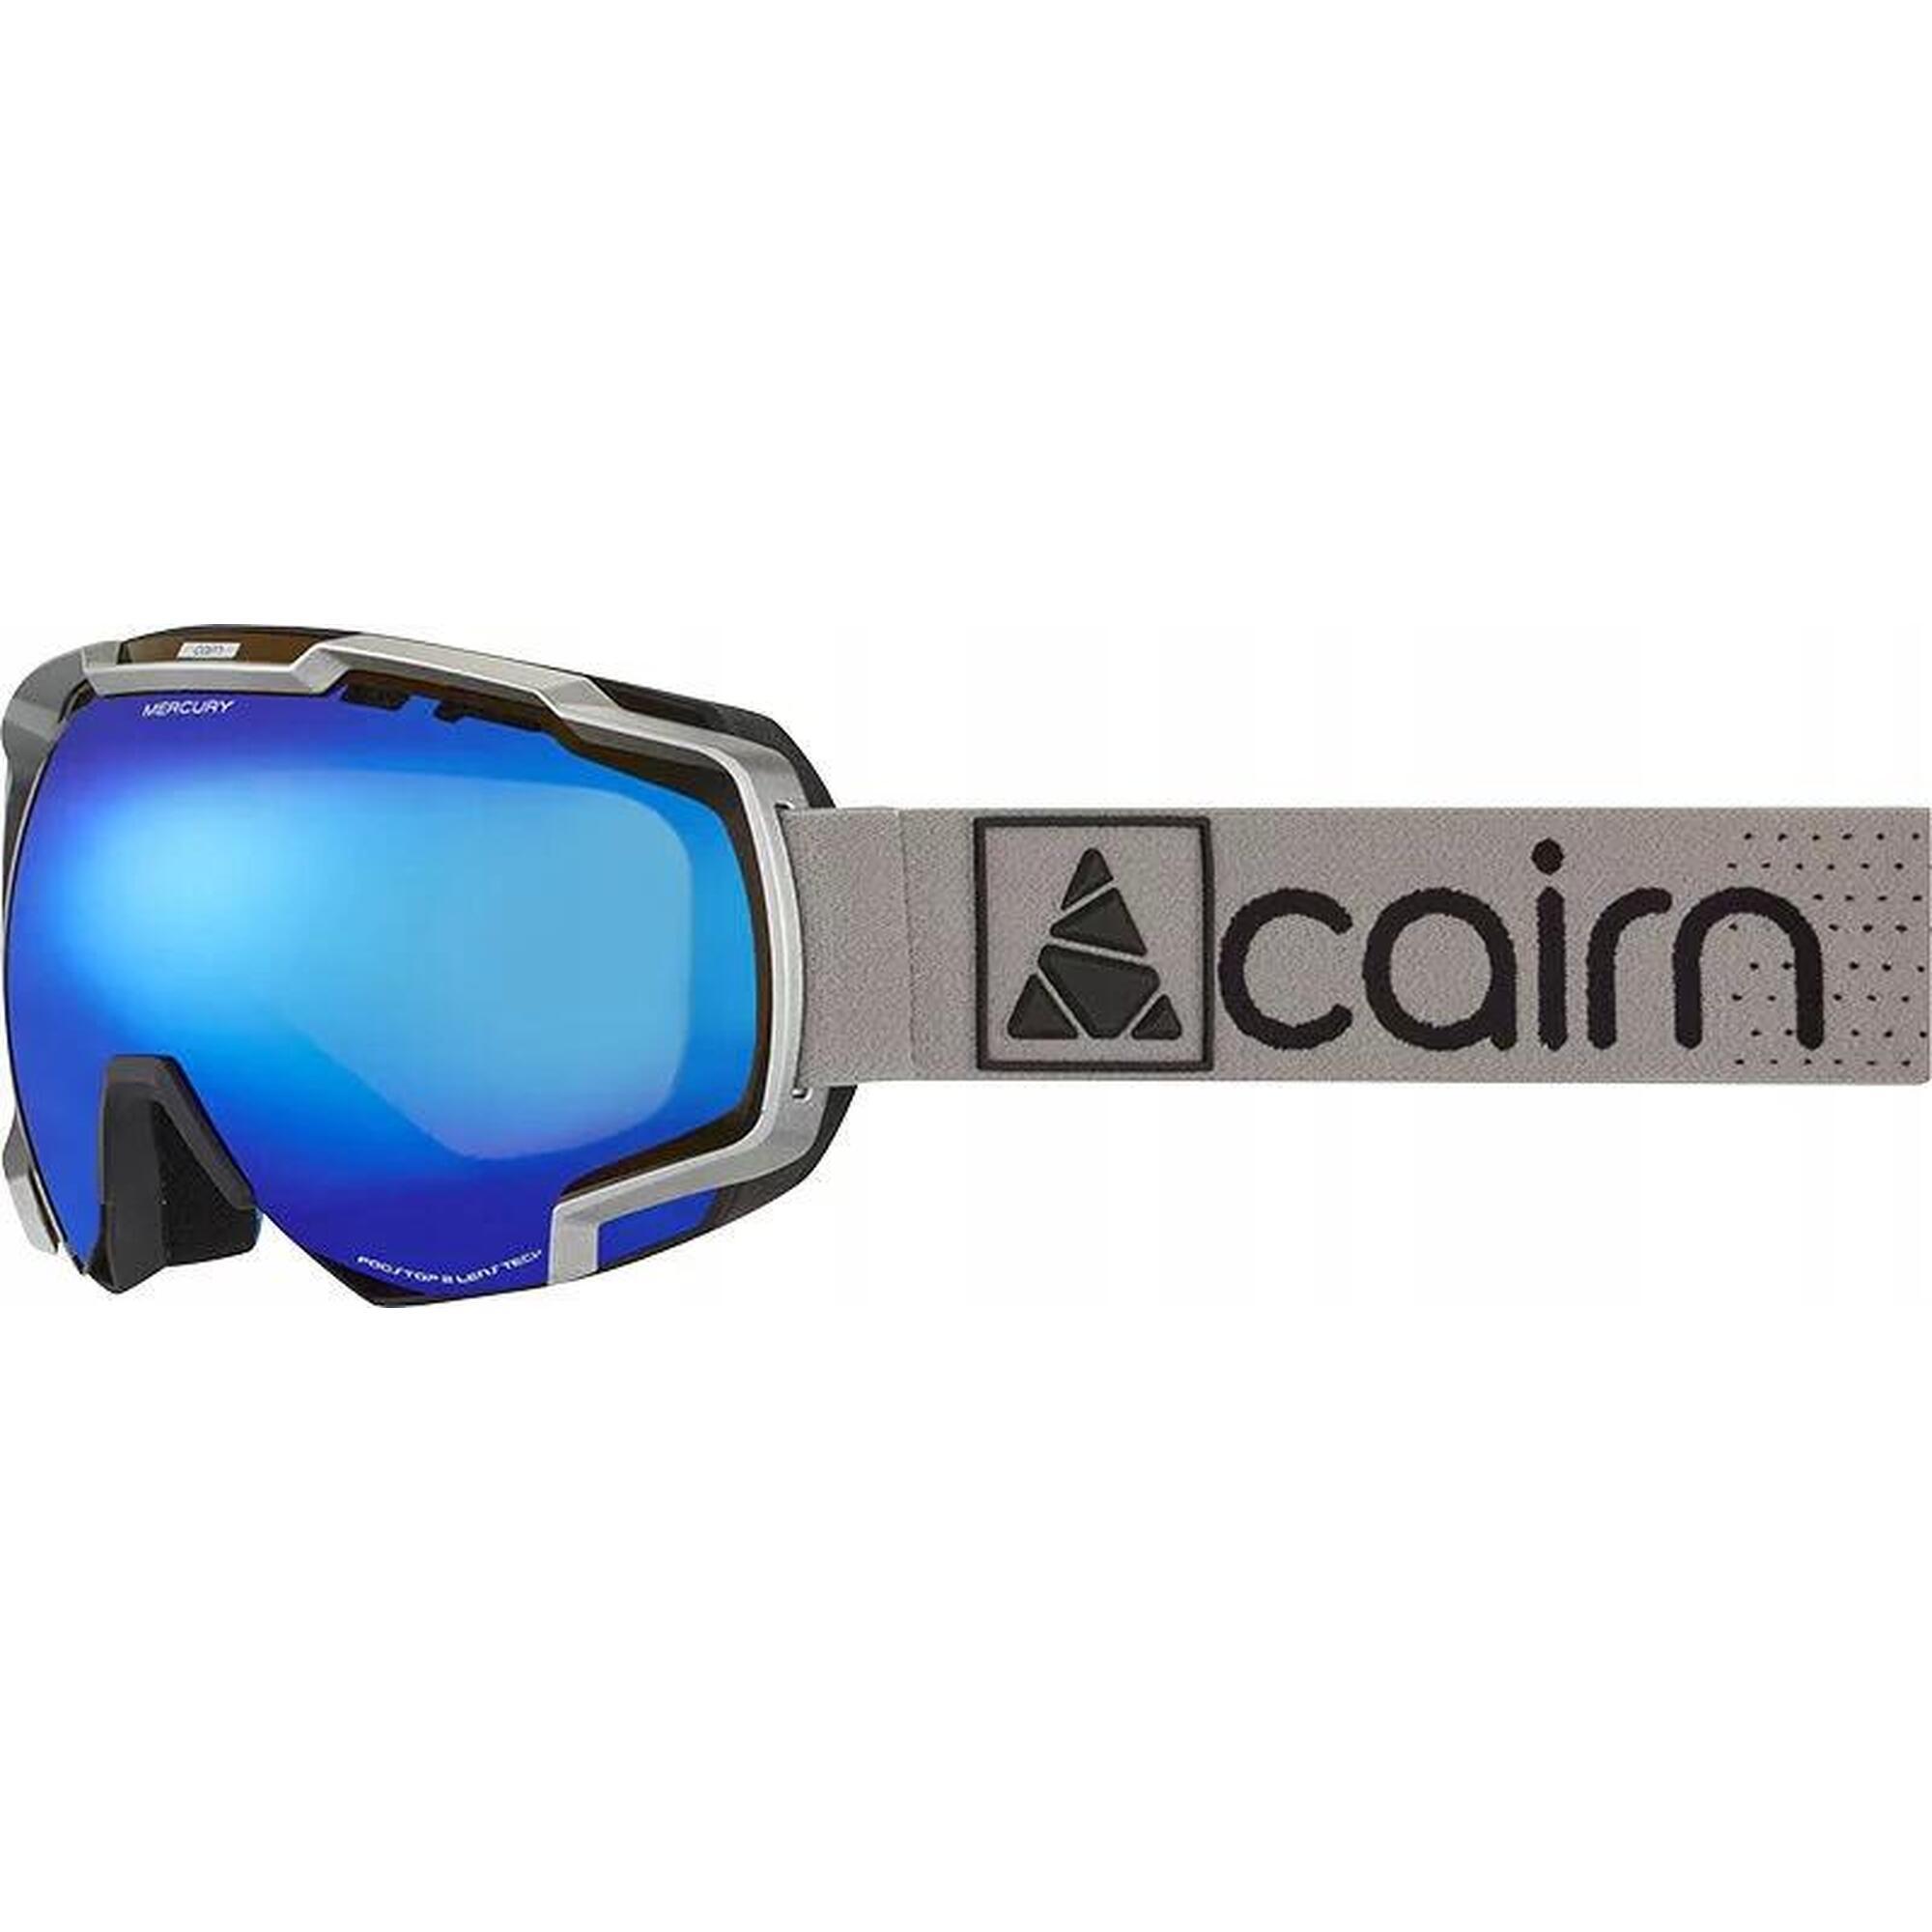 Gogle narciarskie Cairn Mercury